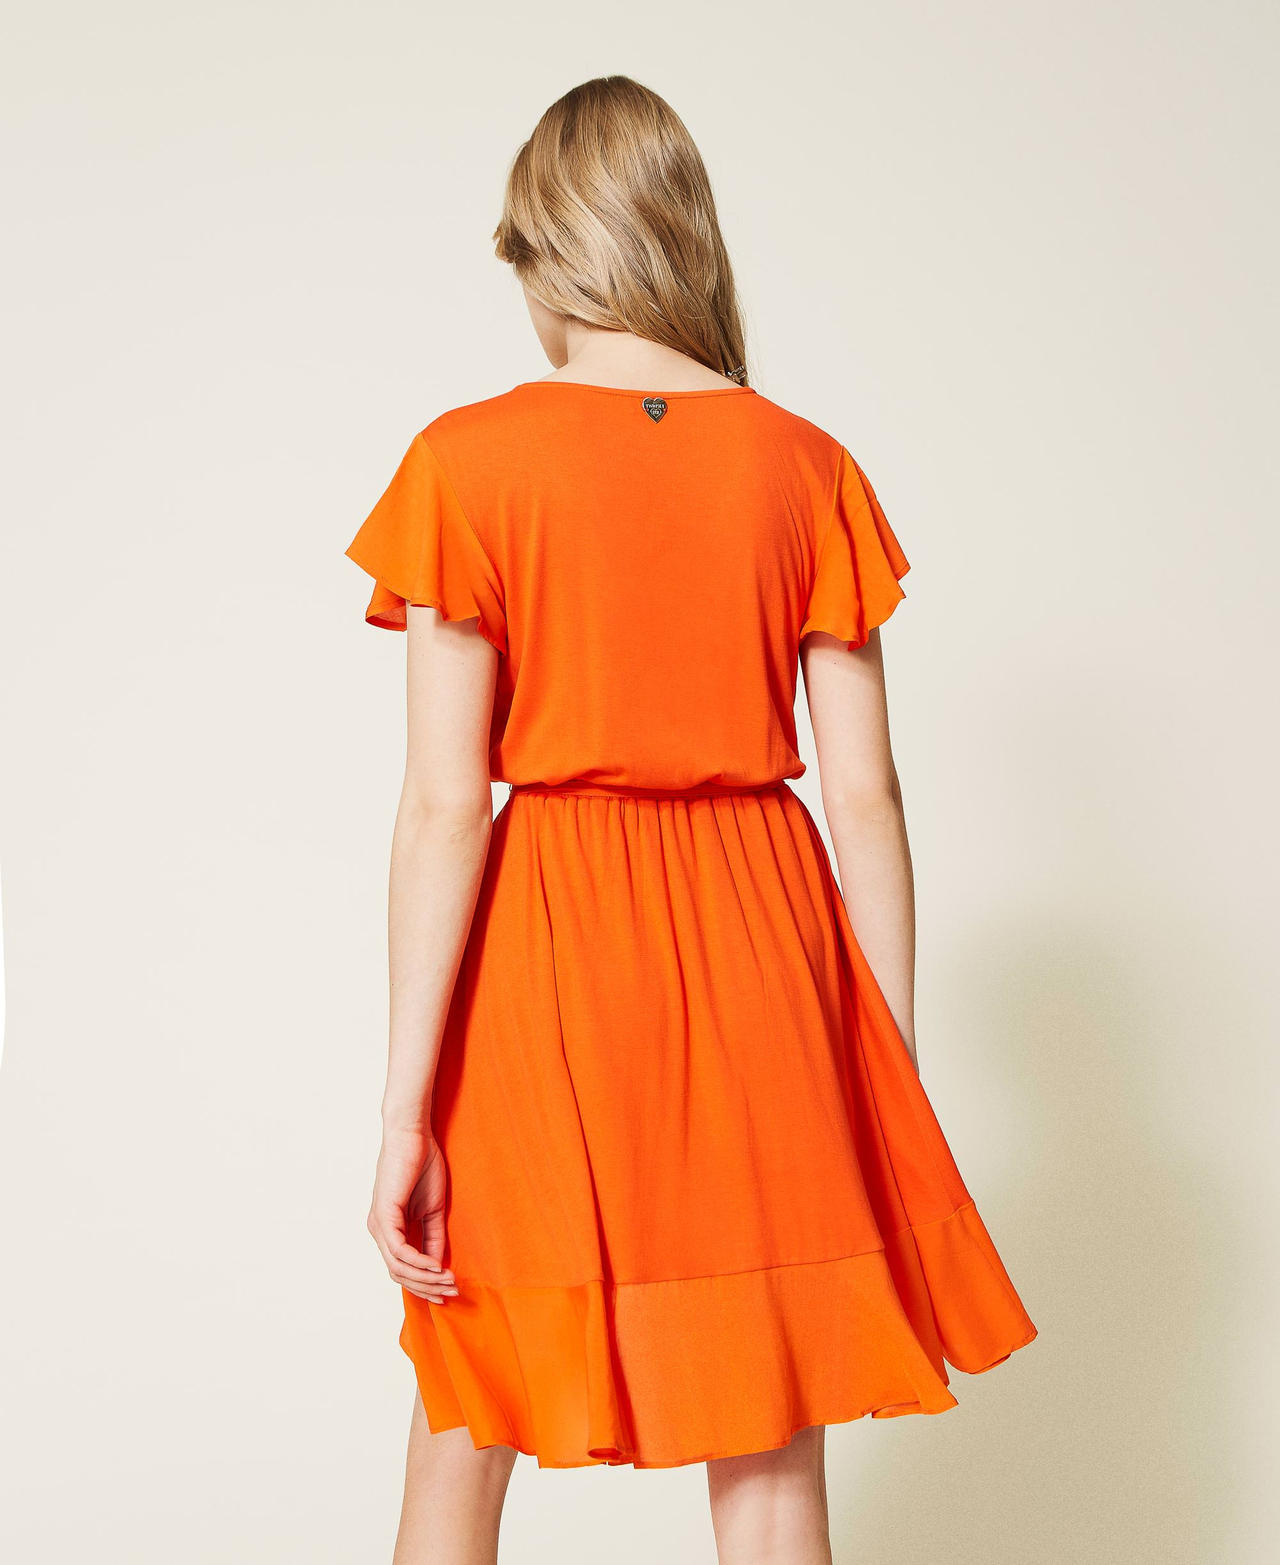 Robe courte avec volant asymétrique Orange « Orange Sun » Femme 221LB2LFF-03